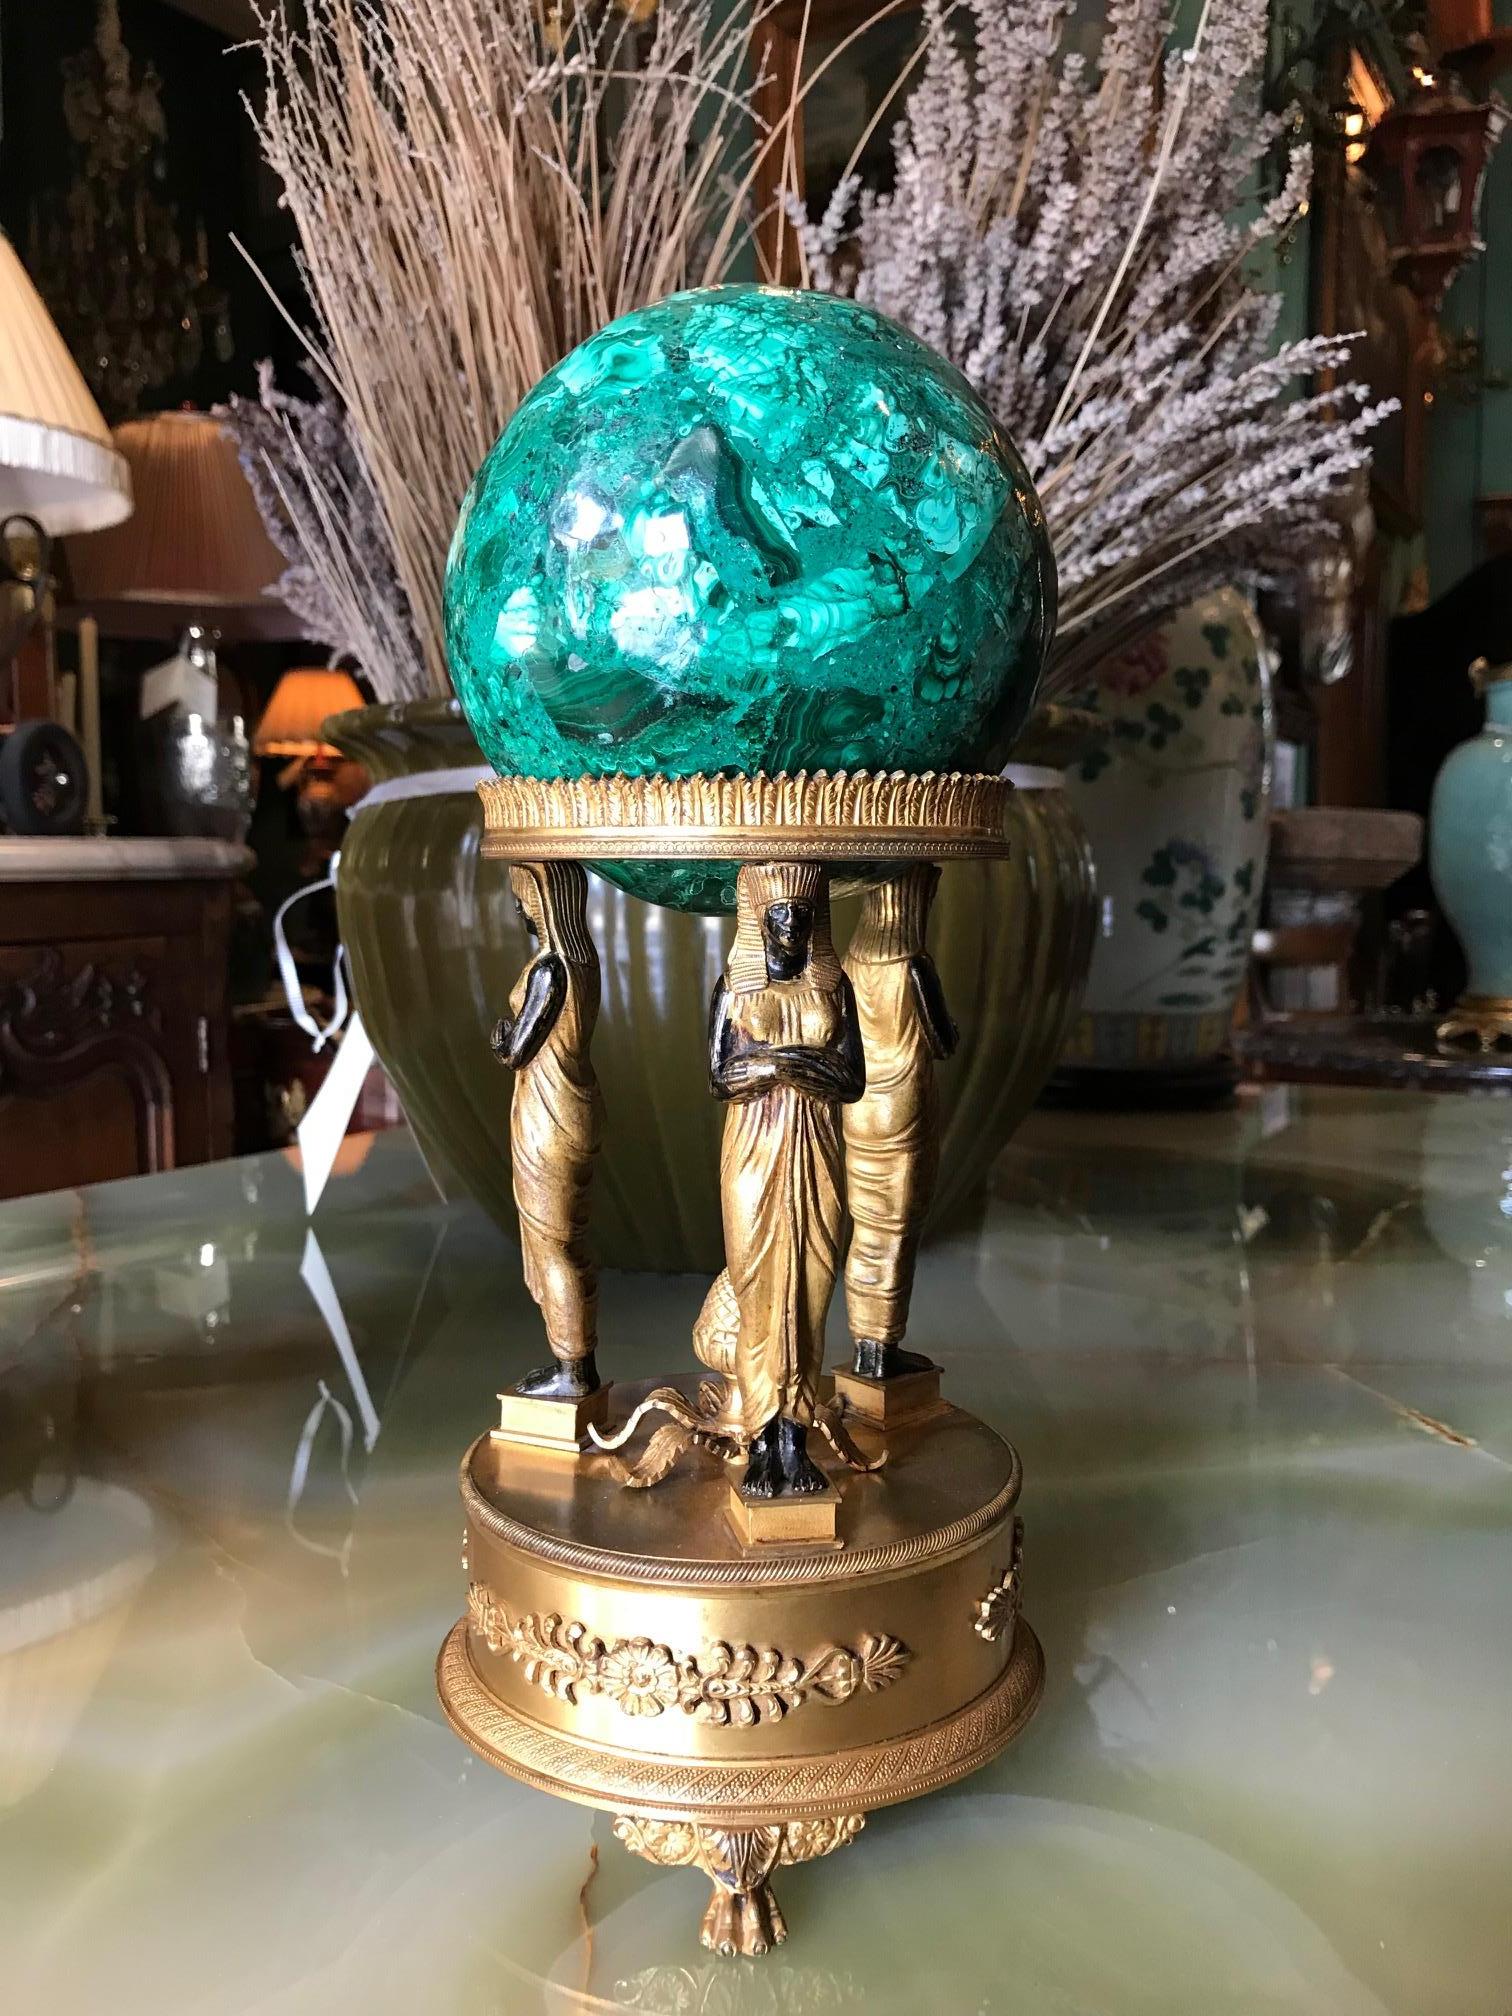 Un magnifique orbe en malachite de style Empire sur un socle en bronze doré retour d'Egypte de 3 figures de vierges debout avec une pomme de pin au centre un porte-couronne détaillé accueillant une grande sphère ronde en malachite sculptée à la